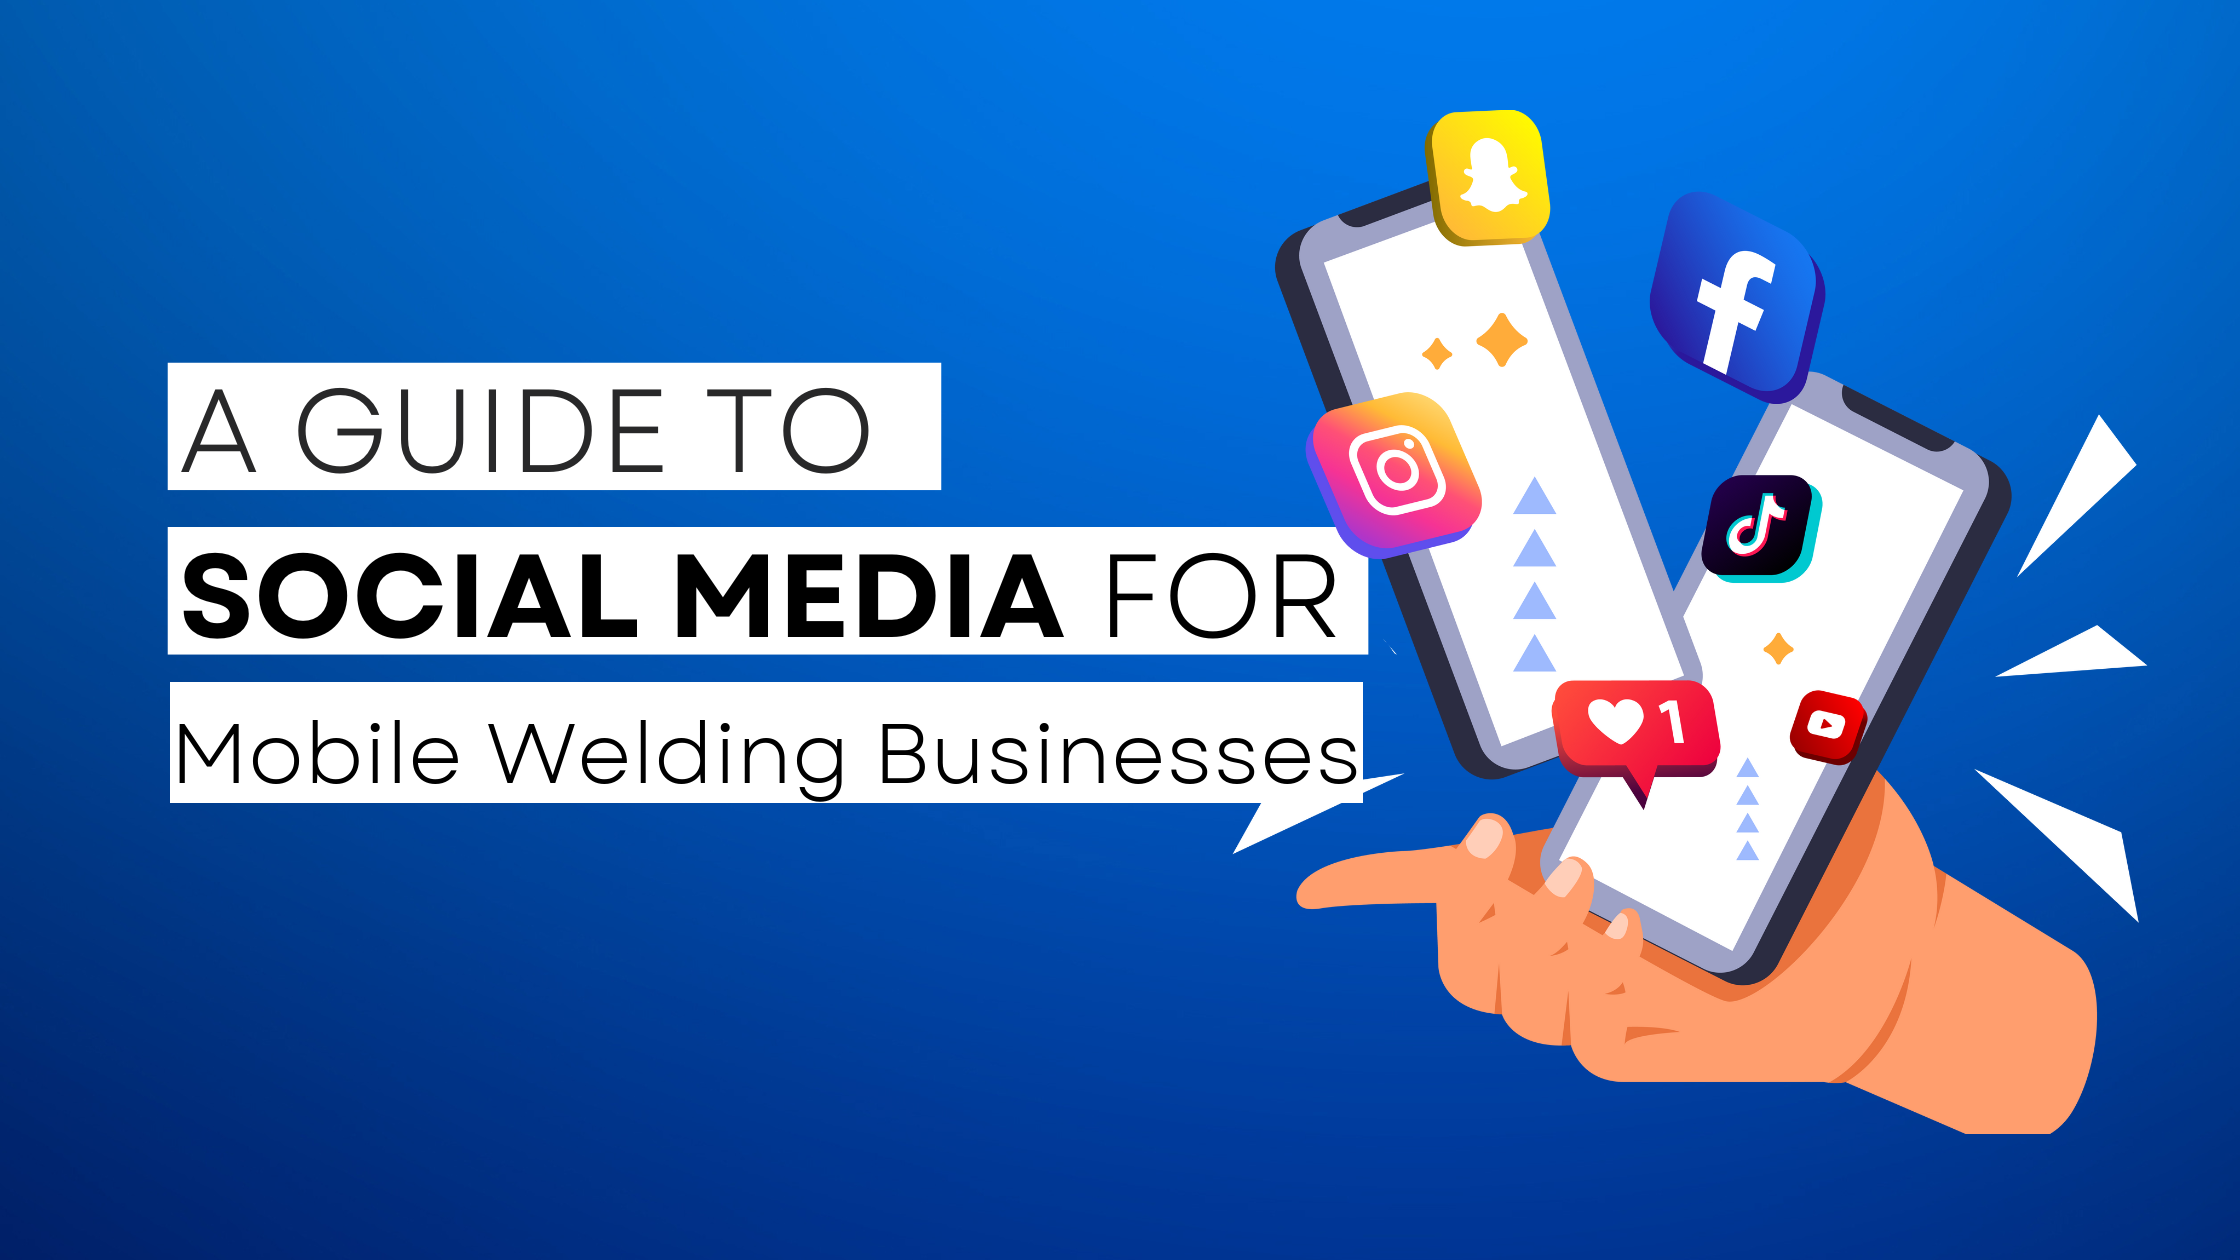 How to start Mobile Welding on social media